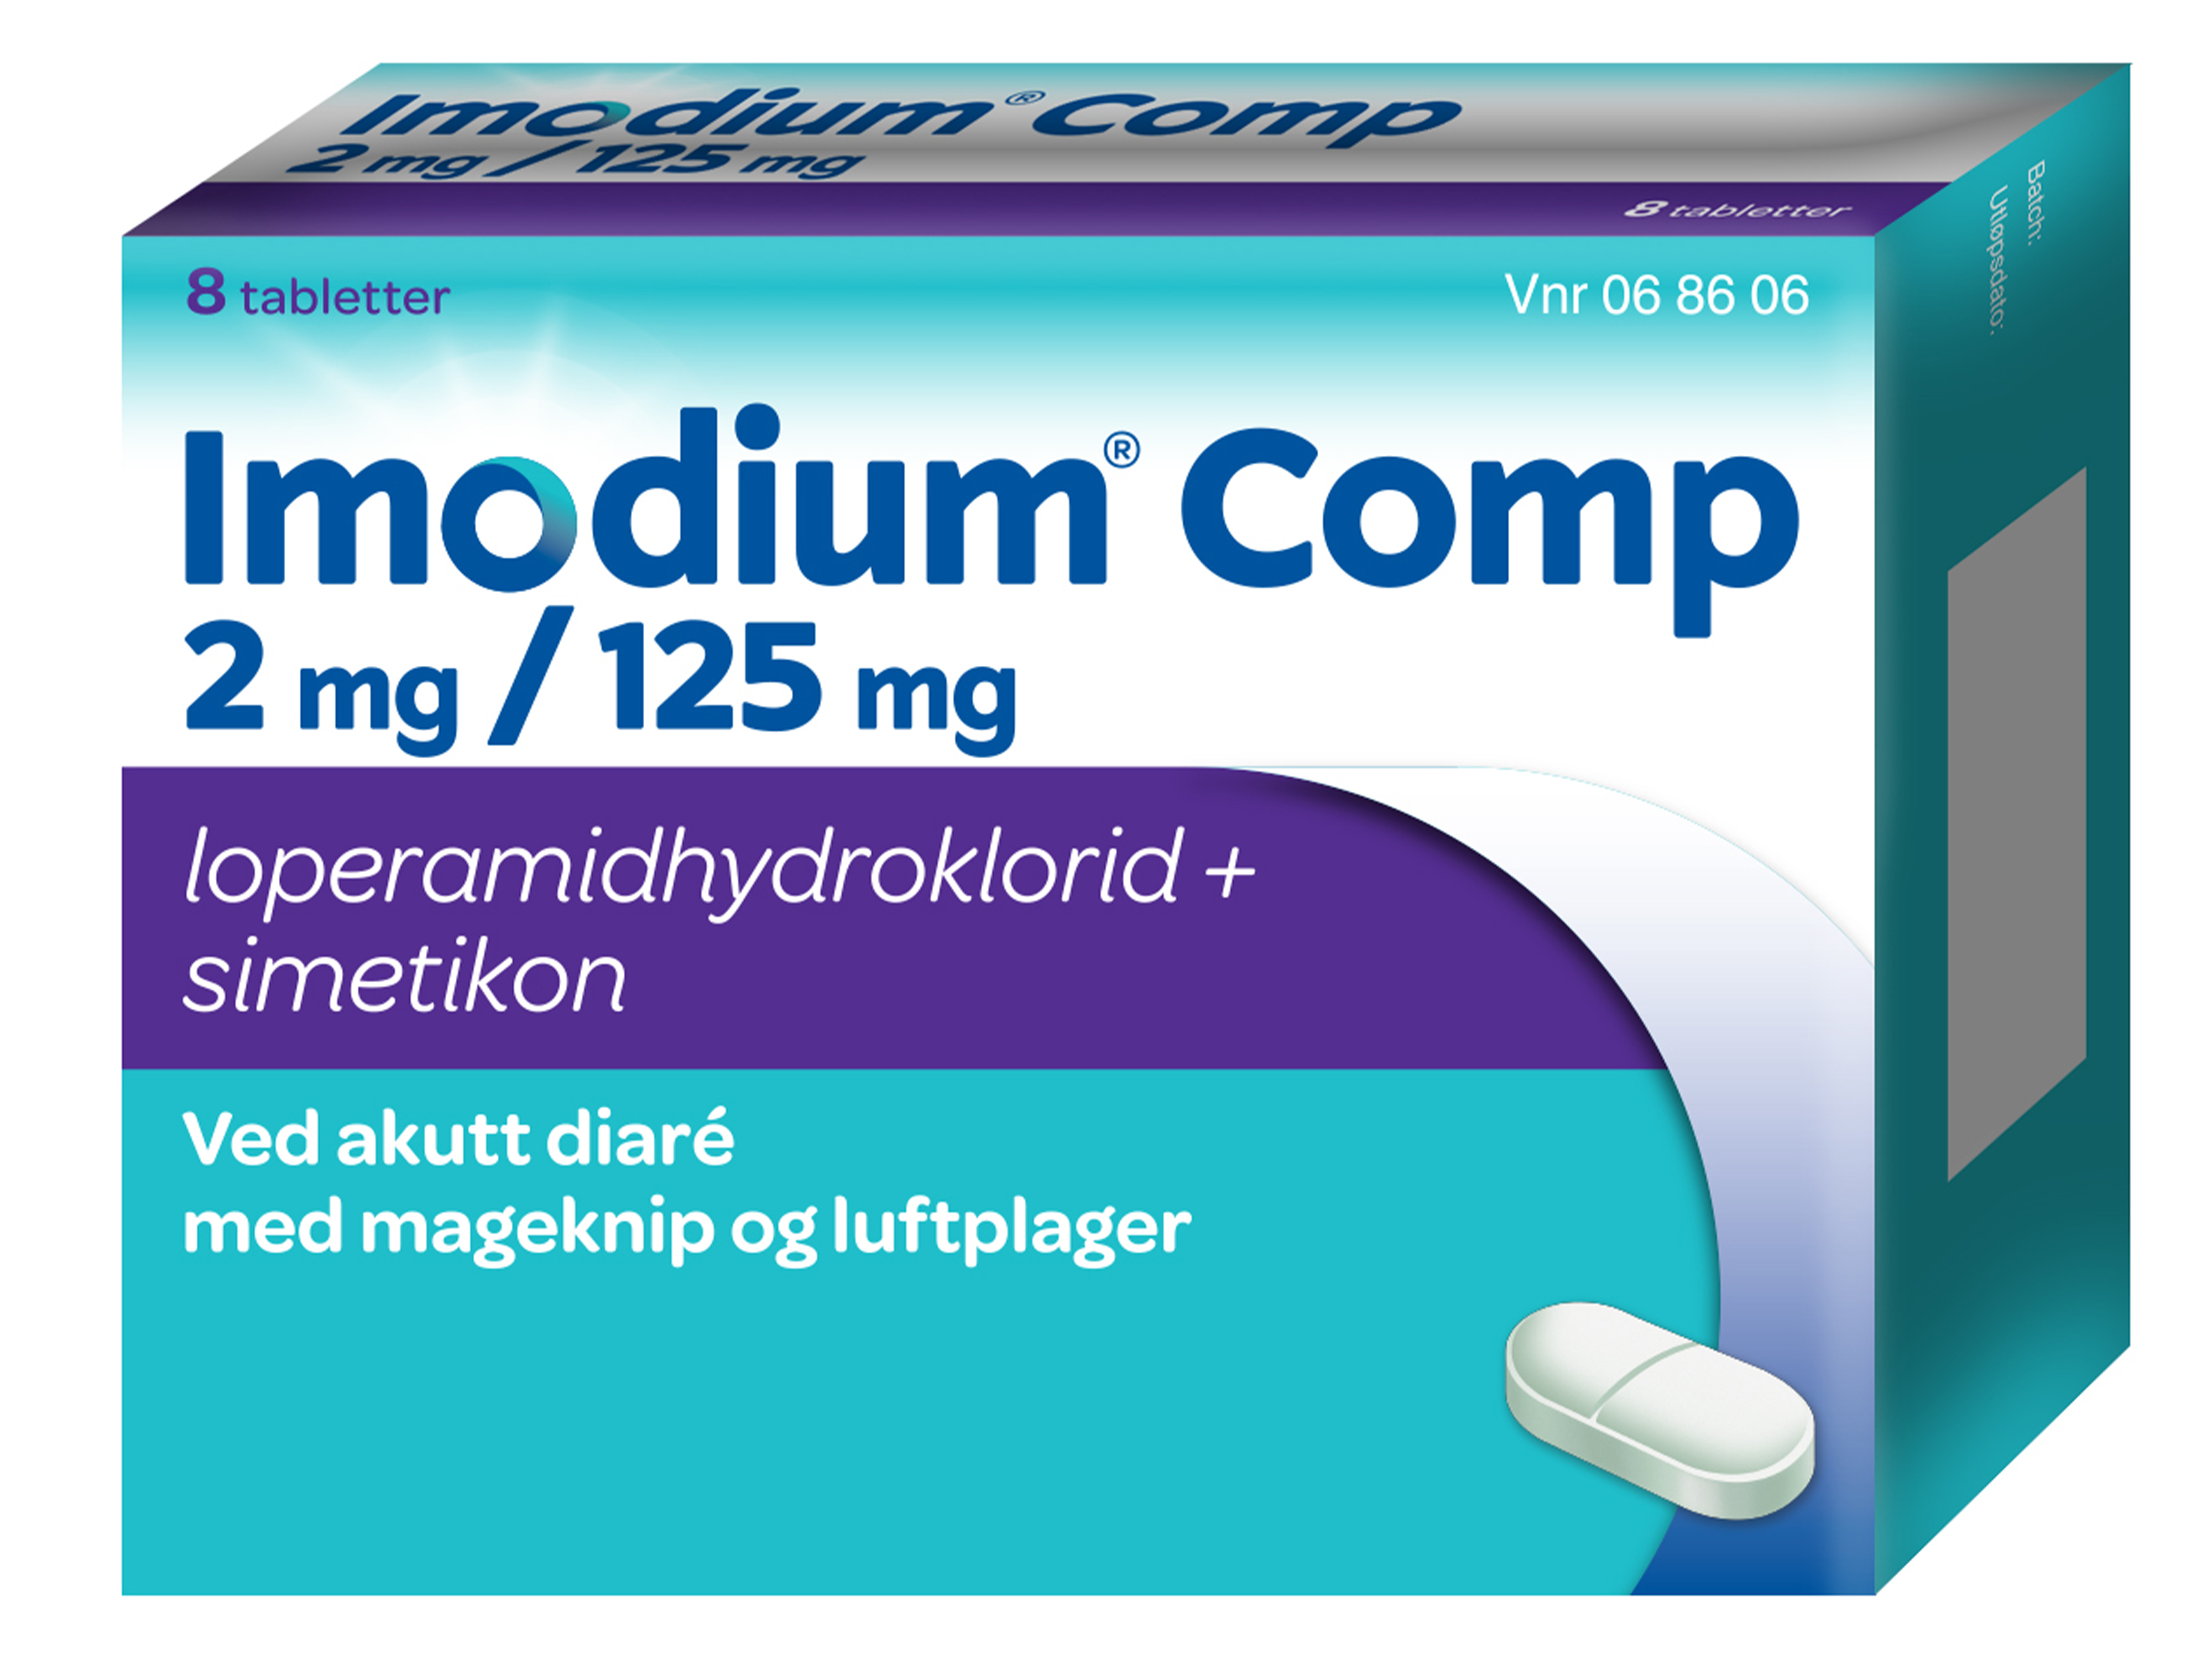 Imodium Comp tabletter, 8 stk. på brett